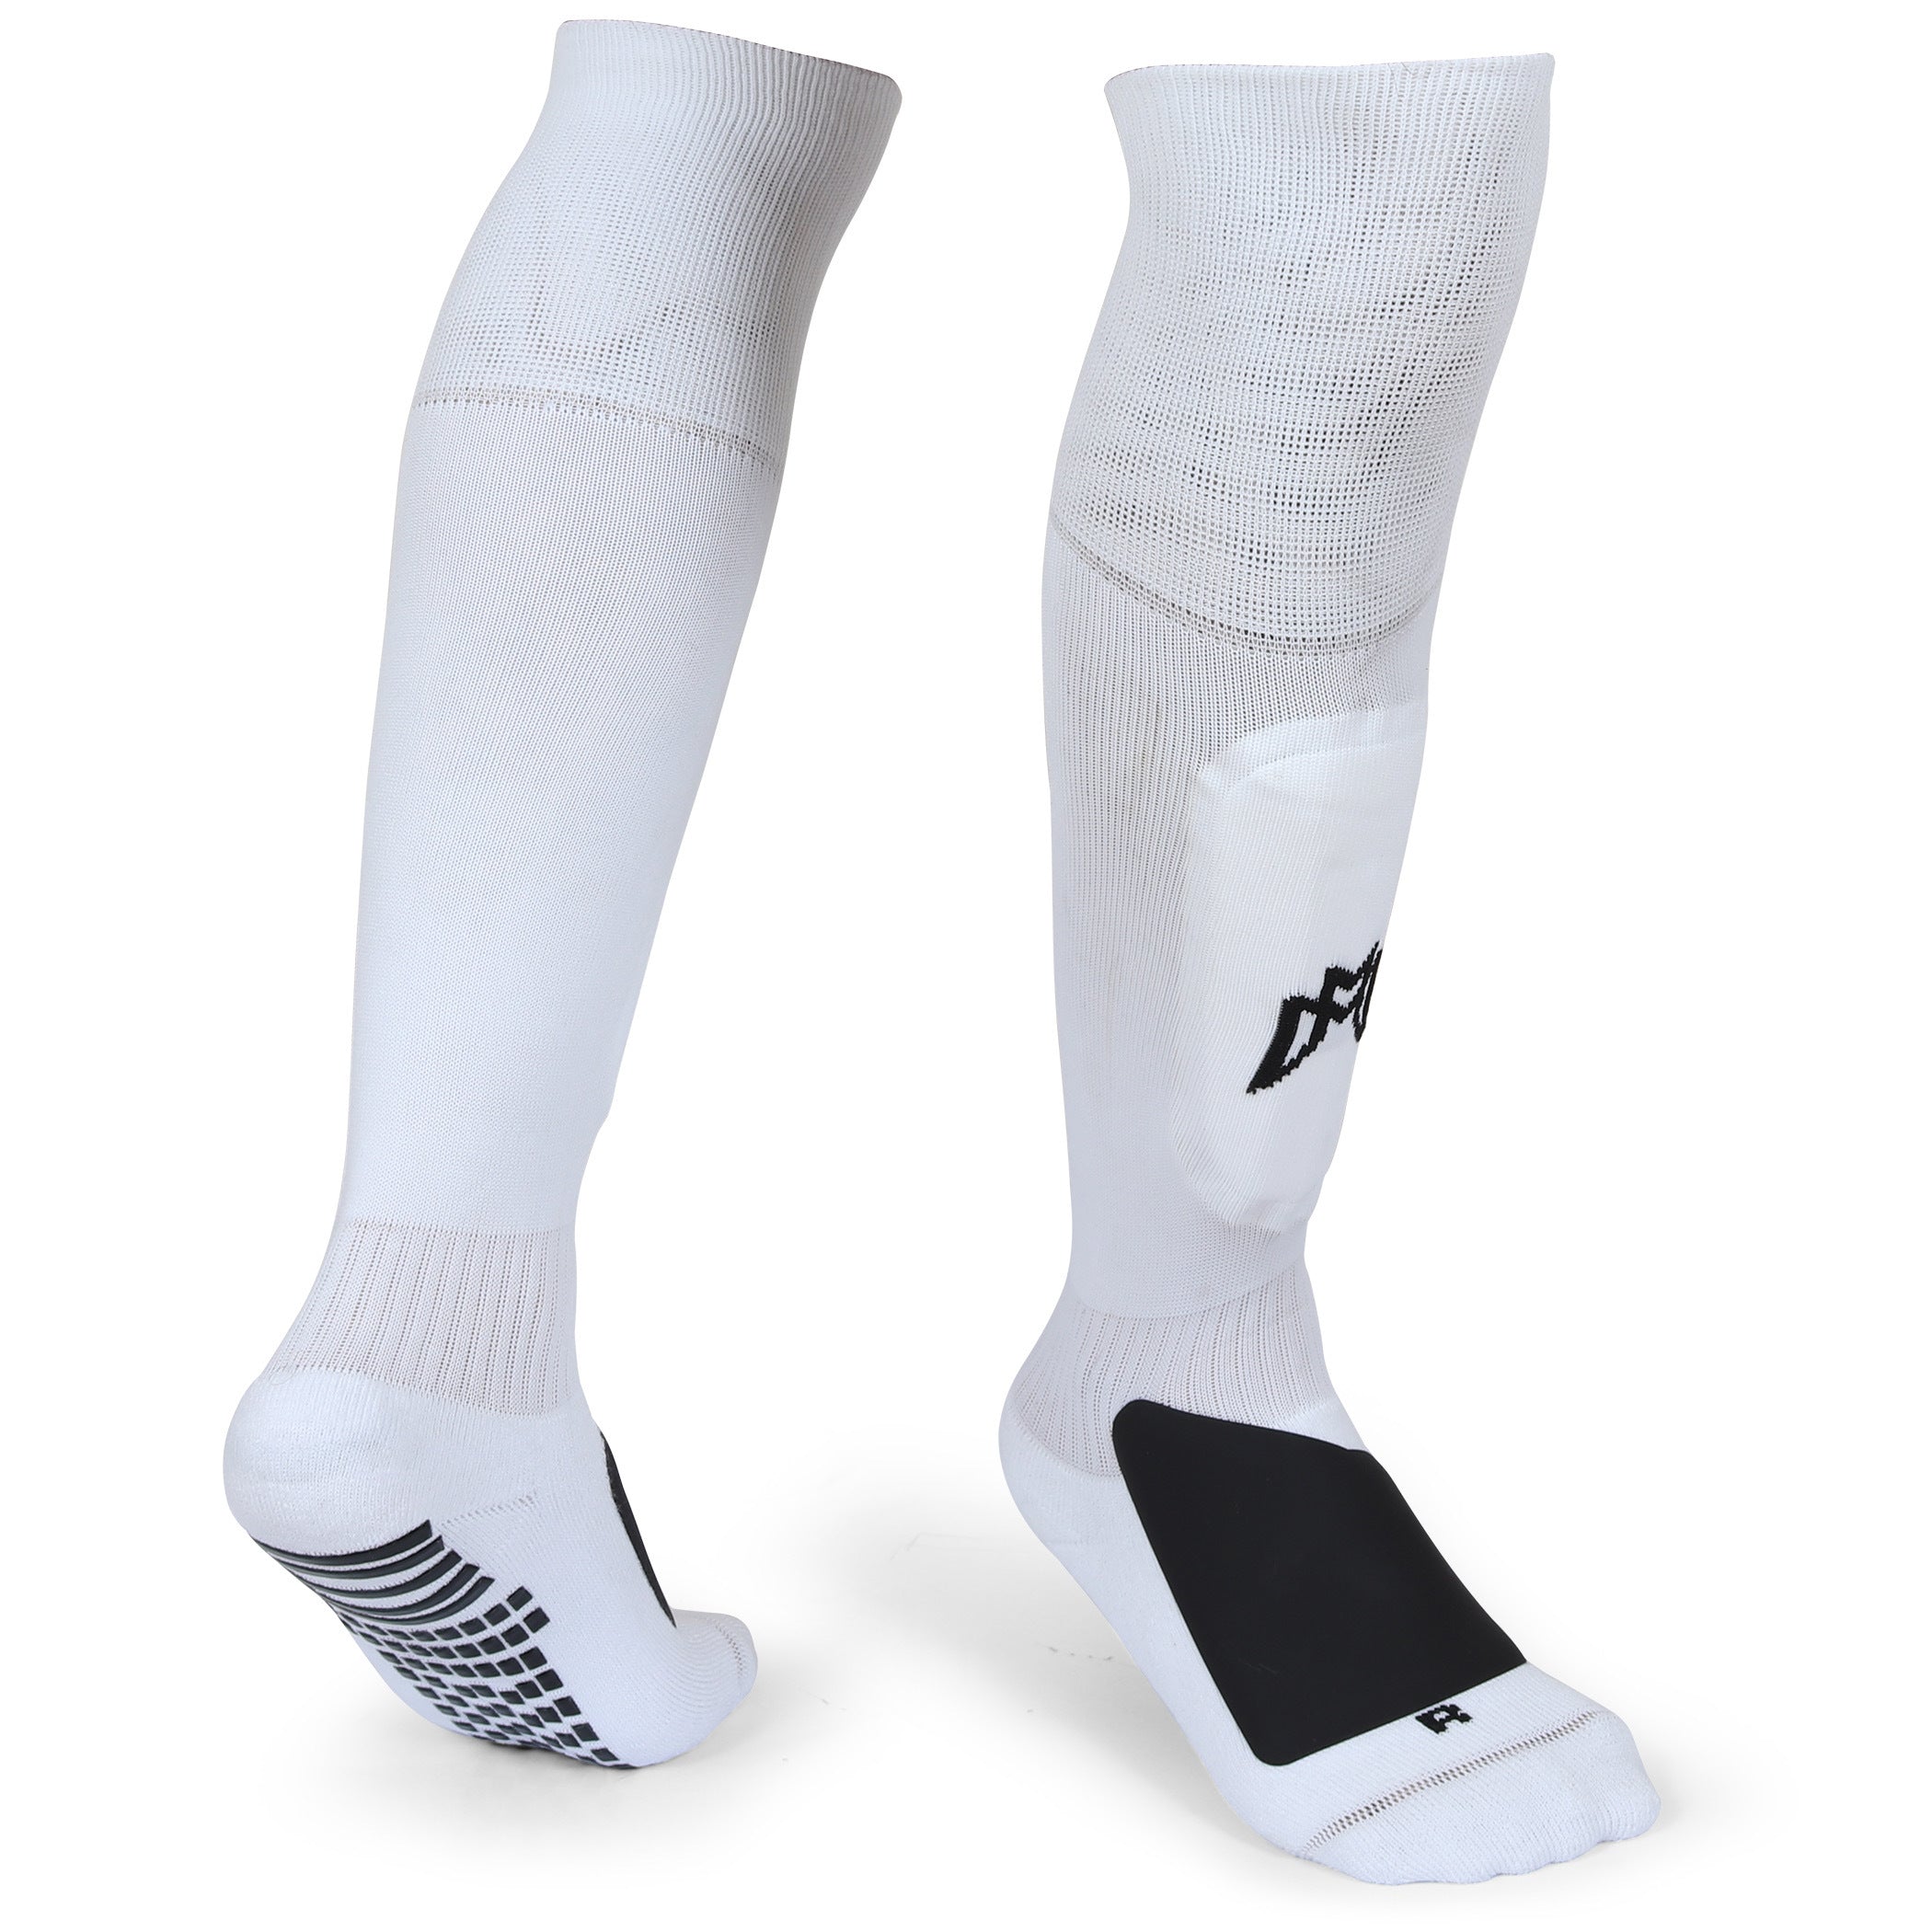 The Grip Sock Soccer Socks, Soccer Socks Men, Anti Slip Soccer Socks, Grip Socks, Shin Guard Sleeves, Shin Guard Straps